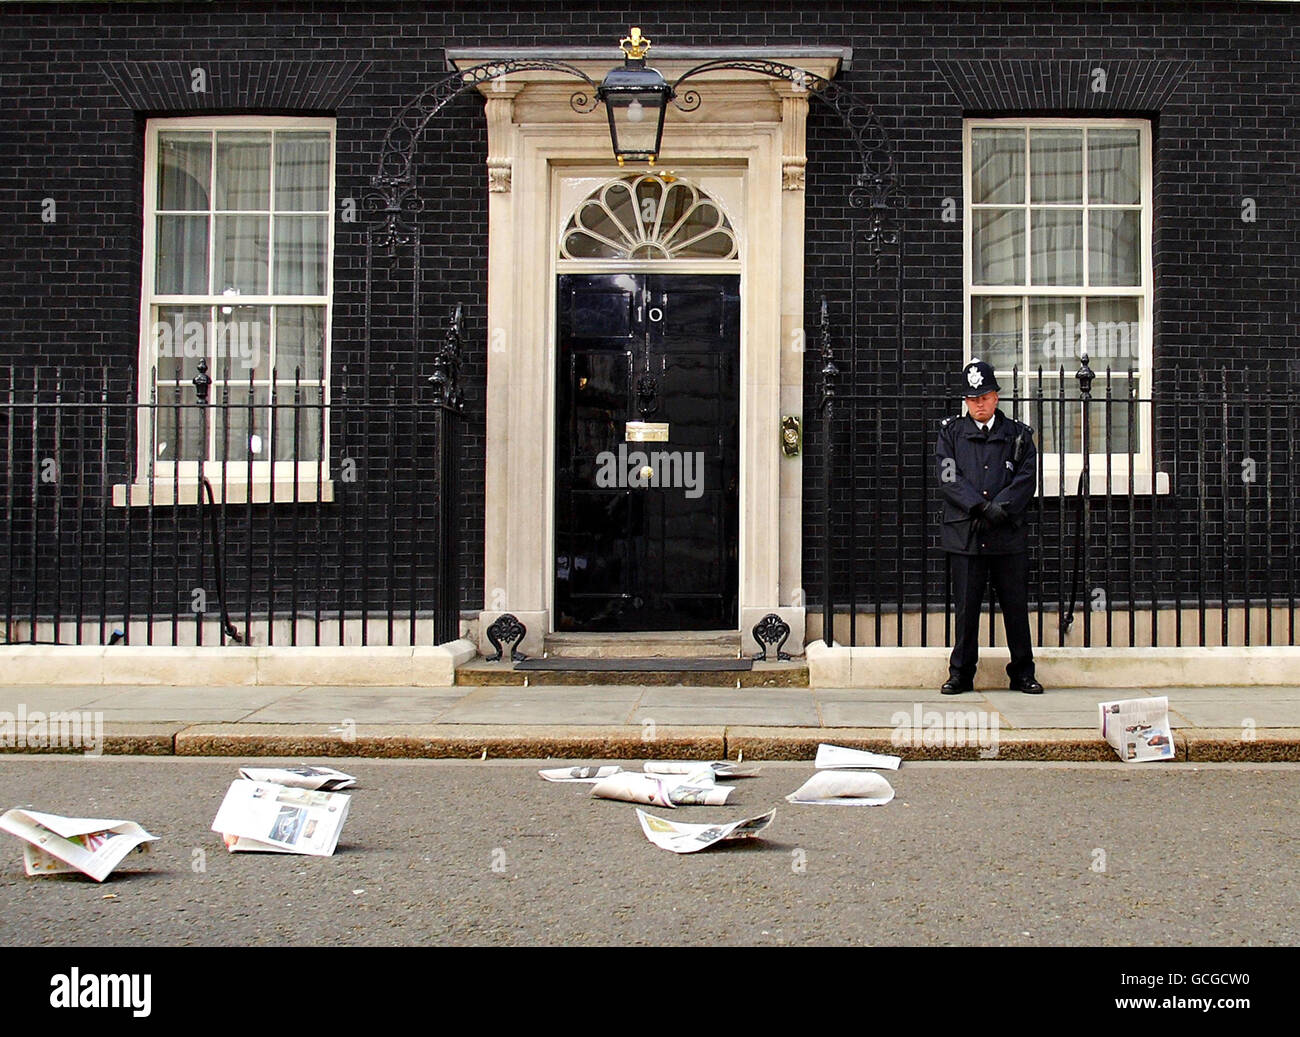 AUTRE RÉCOLTE les pages d'un journal sont soufflées par le vent à l'extérieur du No 10 Downing Street à Londres, le premier jour d'un nouveau gouvernement de coalition après des semaines de spéculation médiatique. Banque D'Images